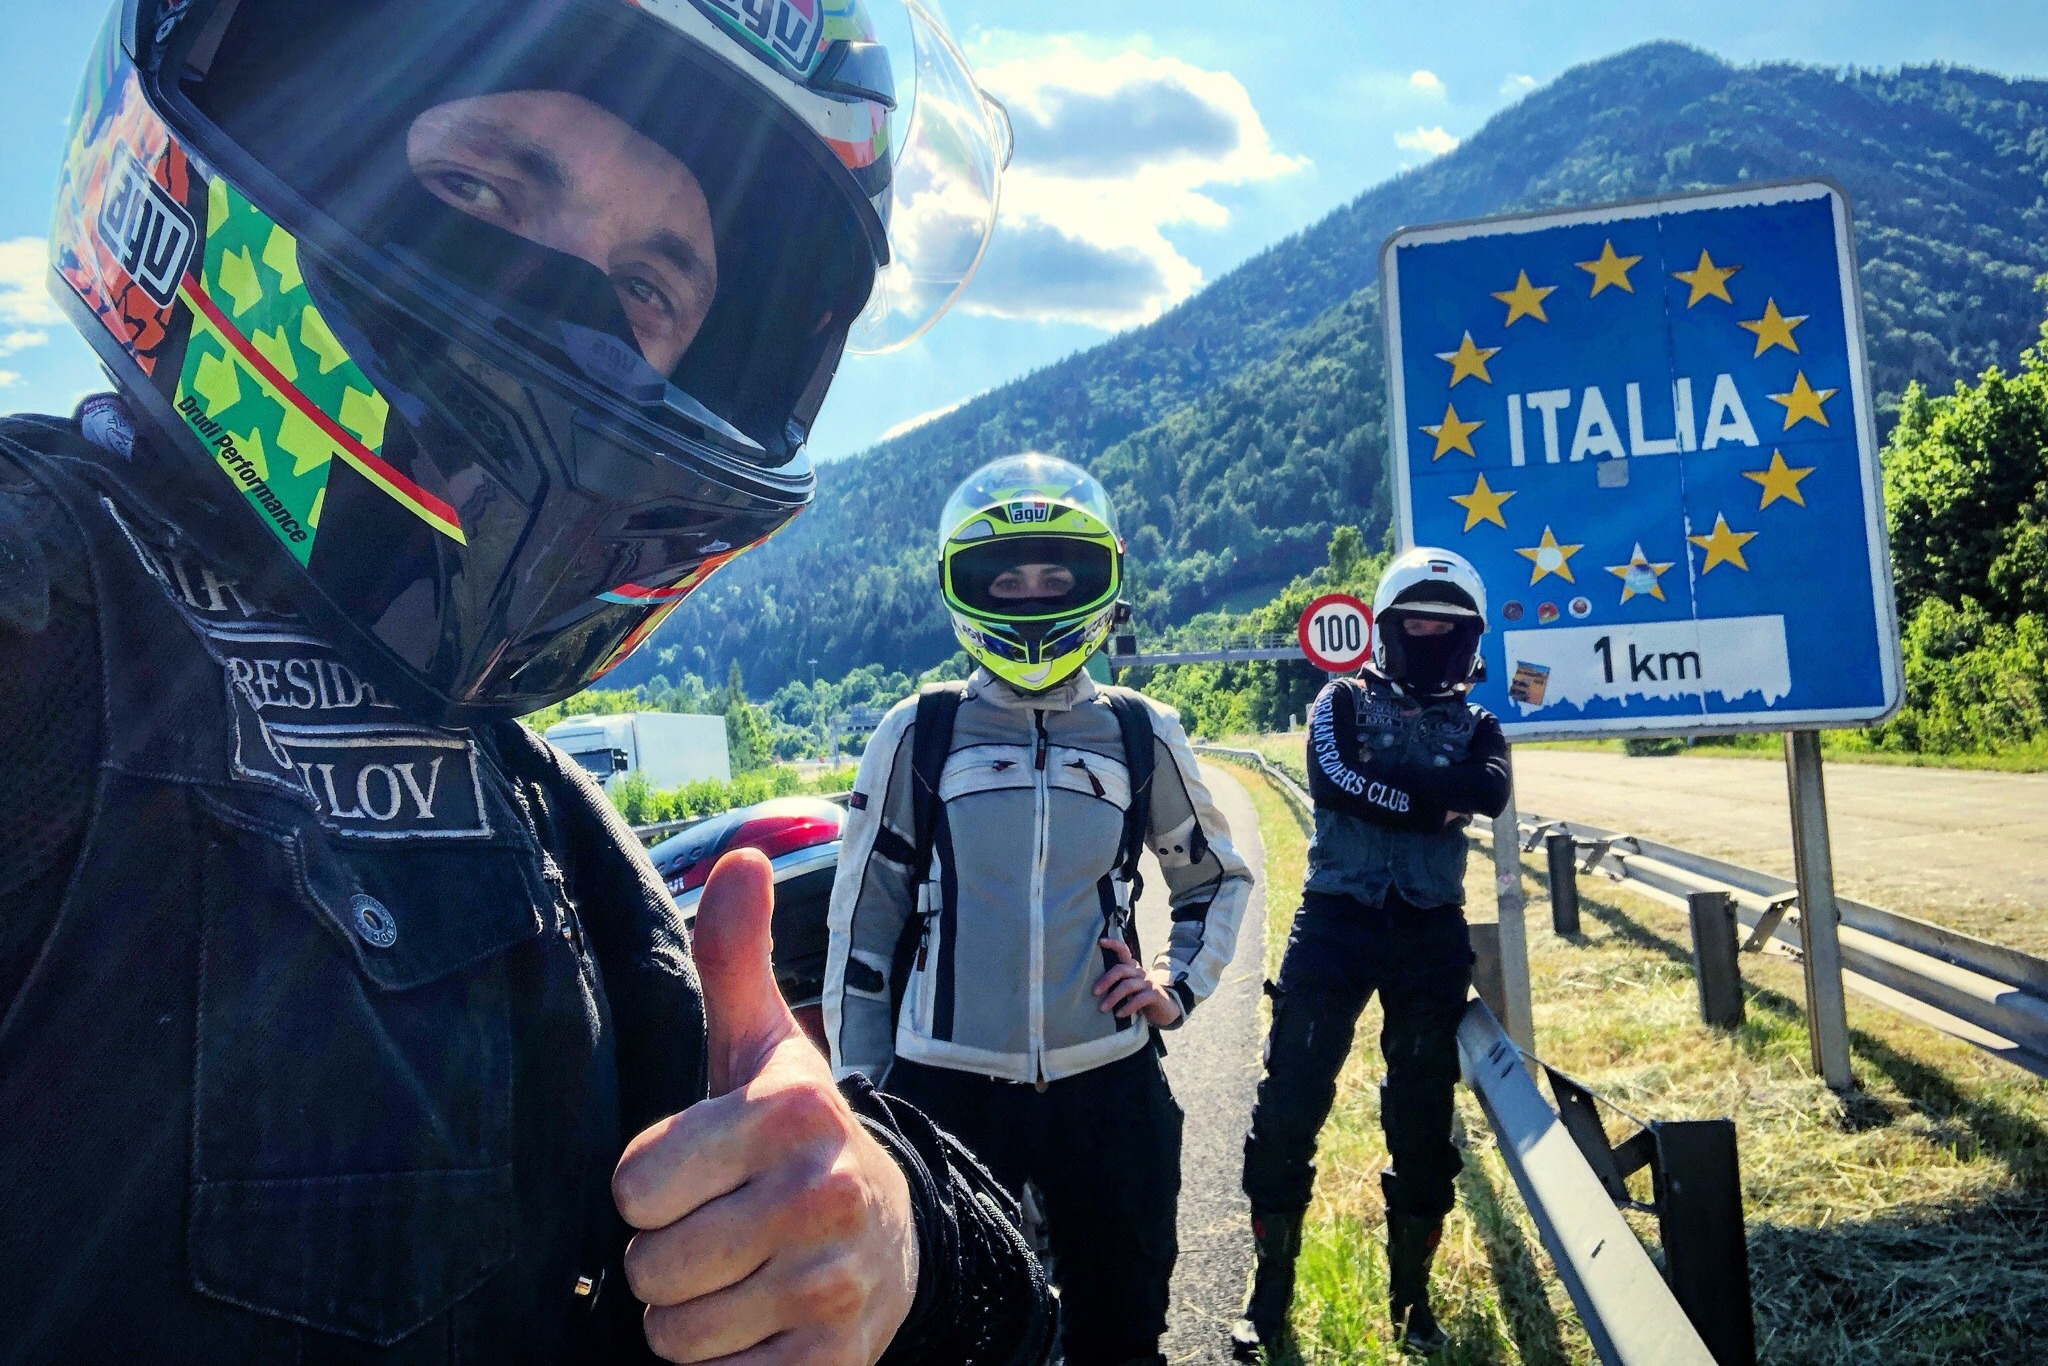 На мотоцикле по Италии видео, На мотоцикле по Италии фото, из Австрии в Италию на мотоцикле, На мотоцикле по Италии отчет, На мотоцикле по Италии маршрут, из России в Италию на мотоцикле